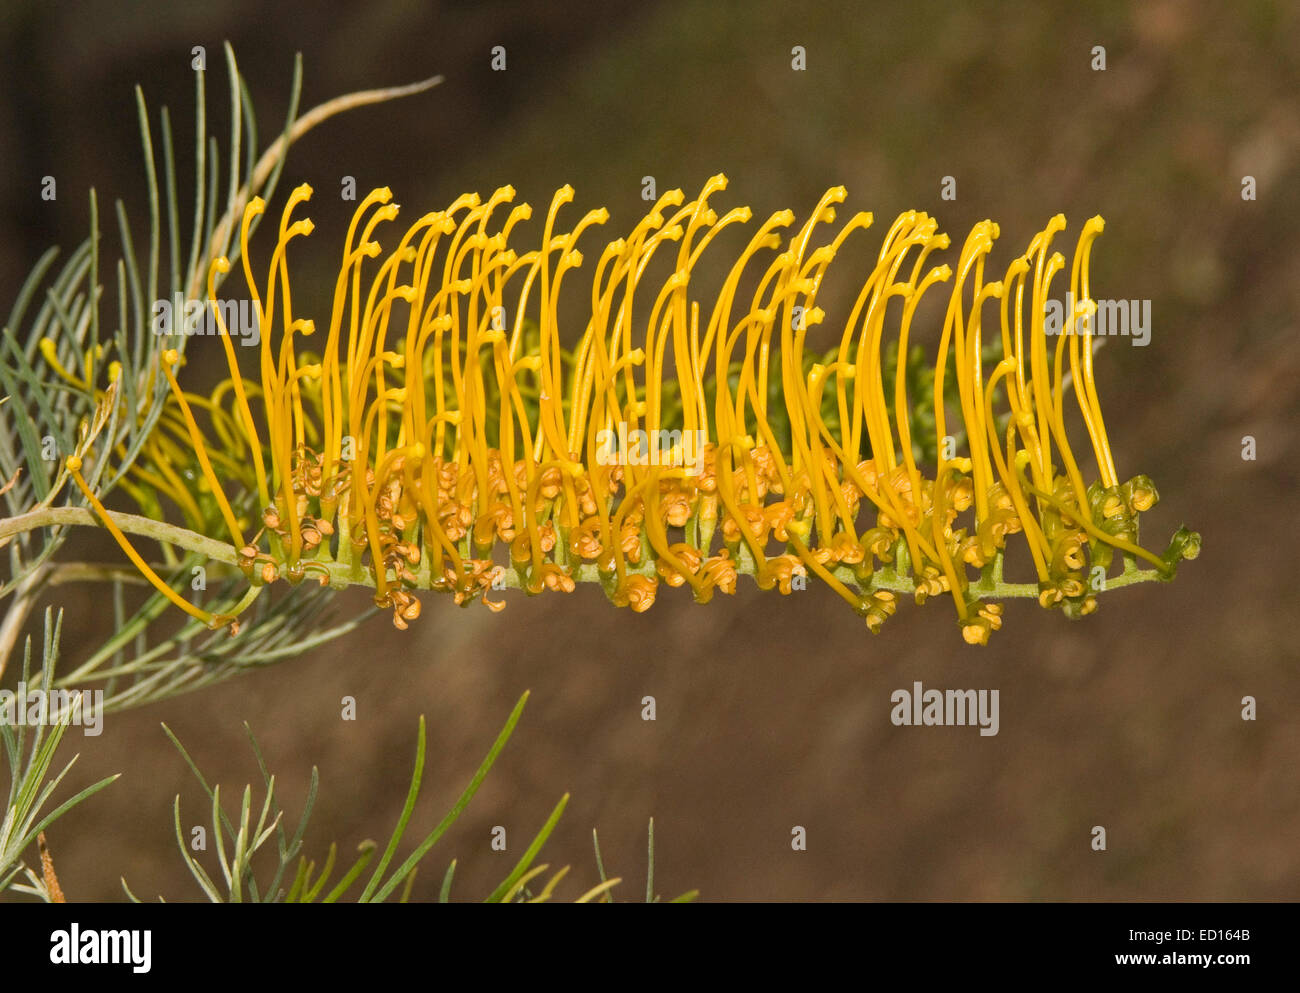 Schöne goldene gelb / orange Blume der Grevillea "Goldene Lyra", eine australische einheimische Pflanze vor einem dunklen Hintergrund Stockfoto